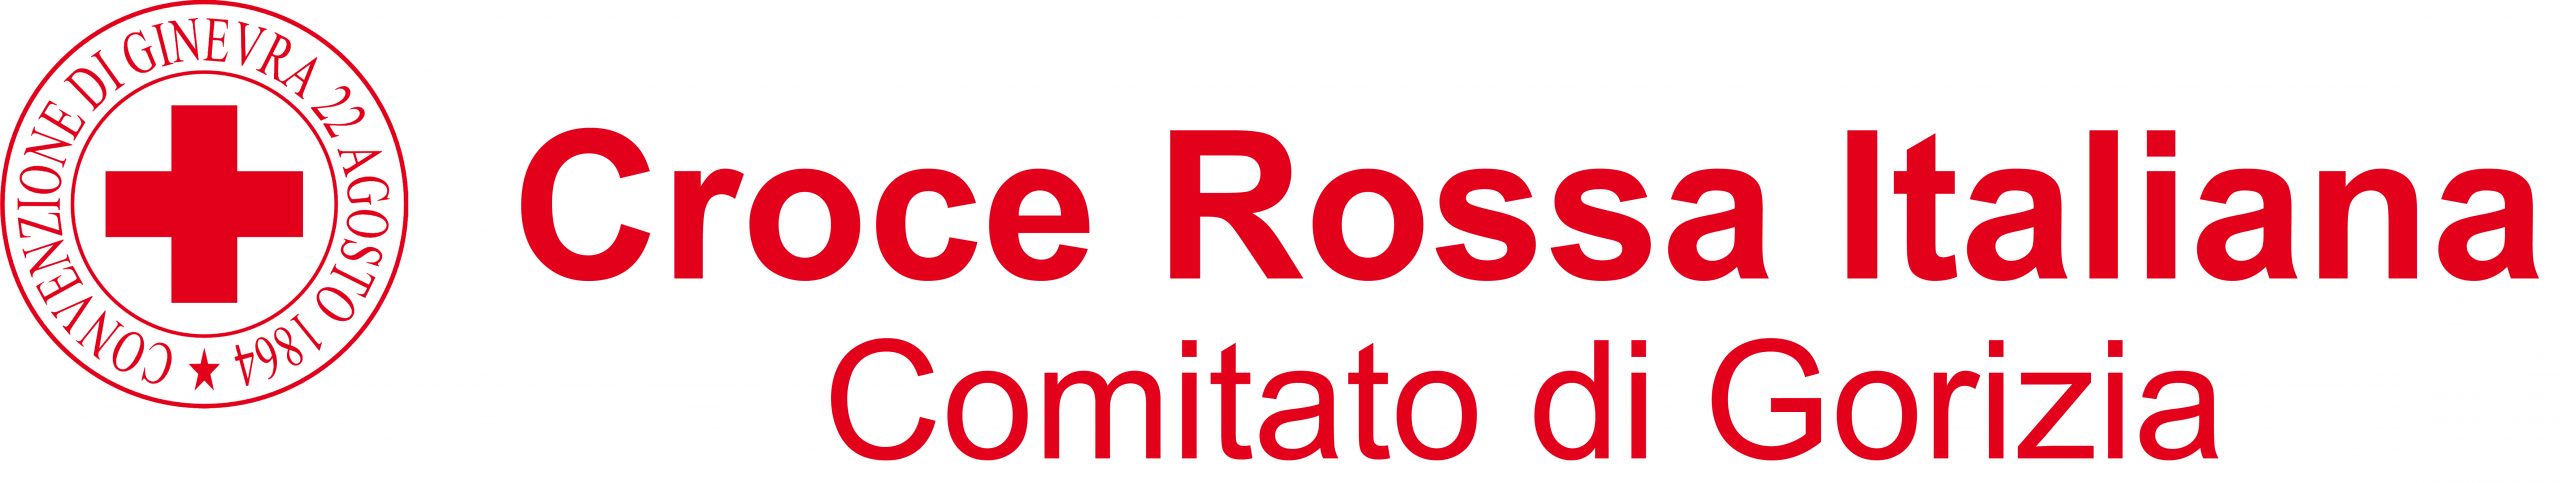 Croce Rossa Italiana - Comitato di Gorizia